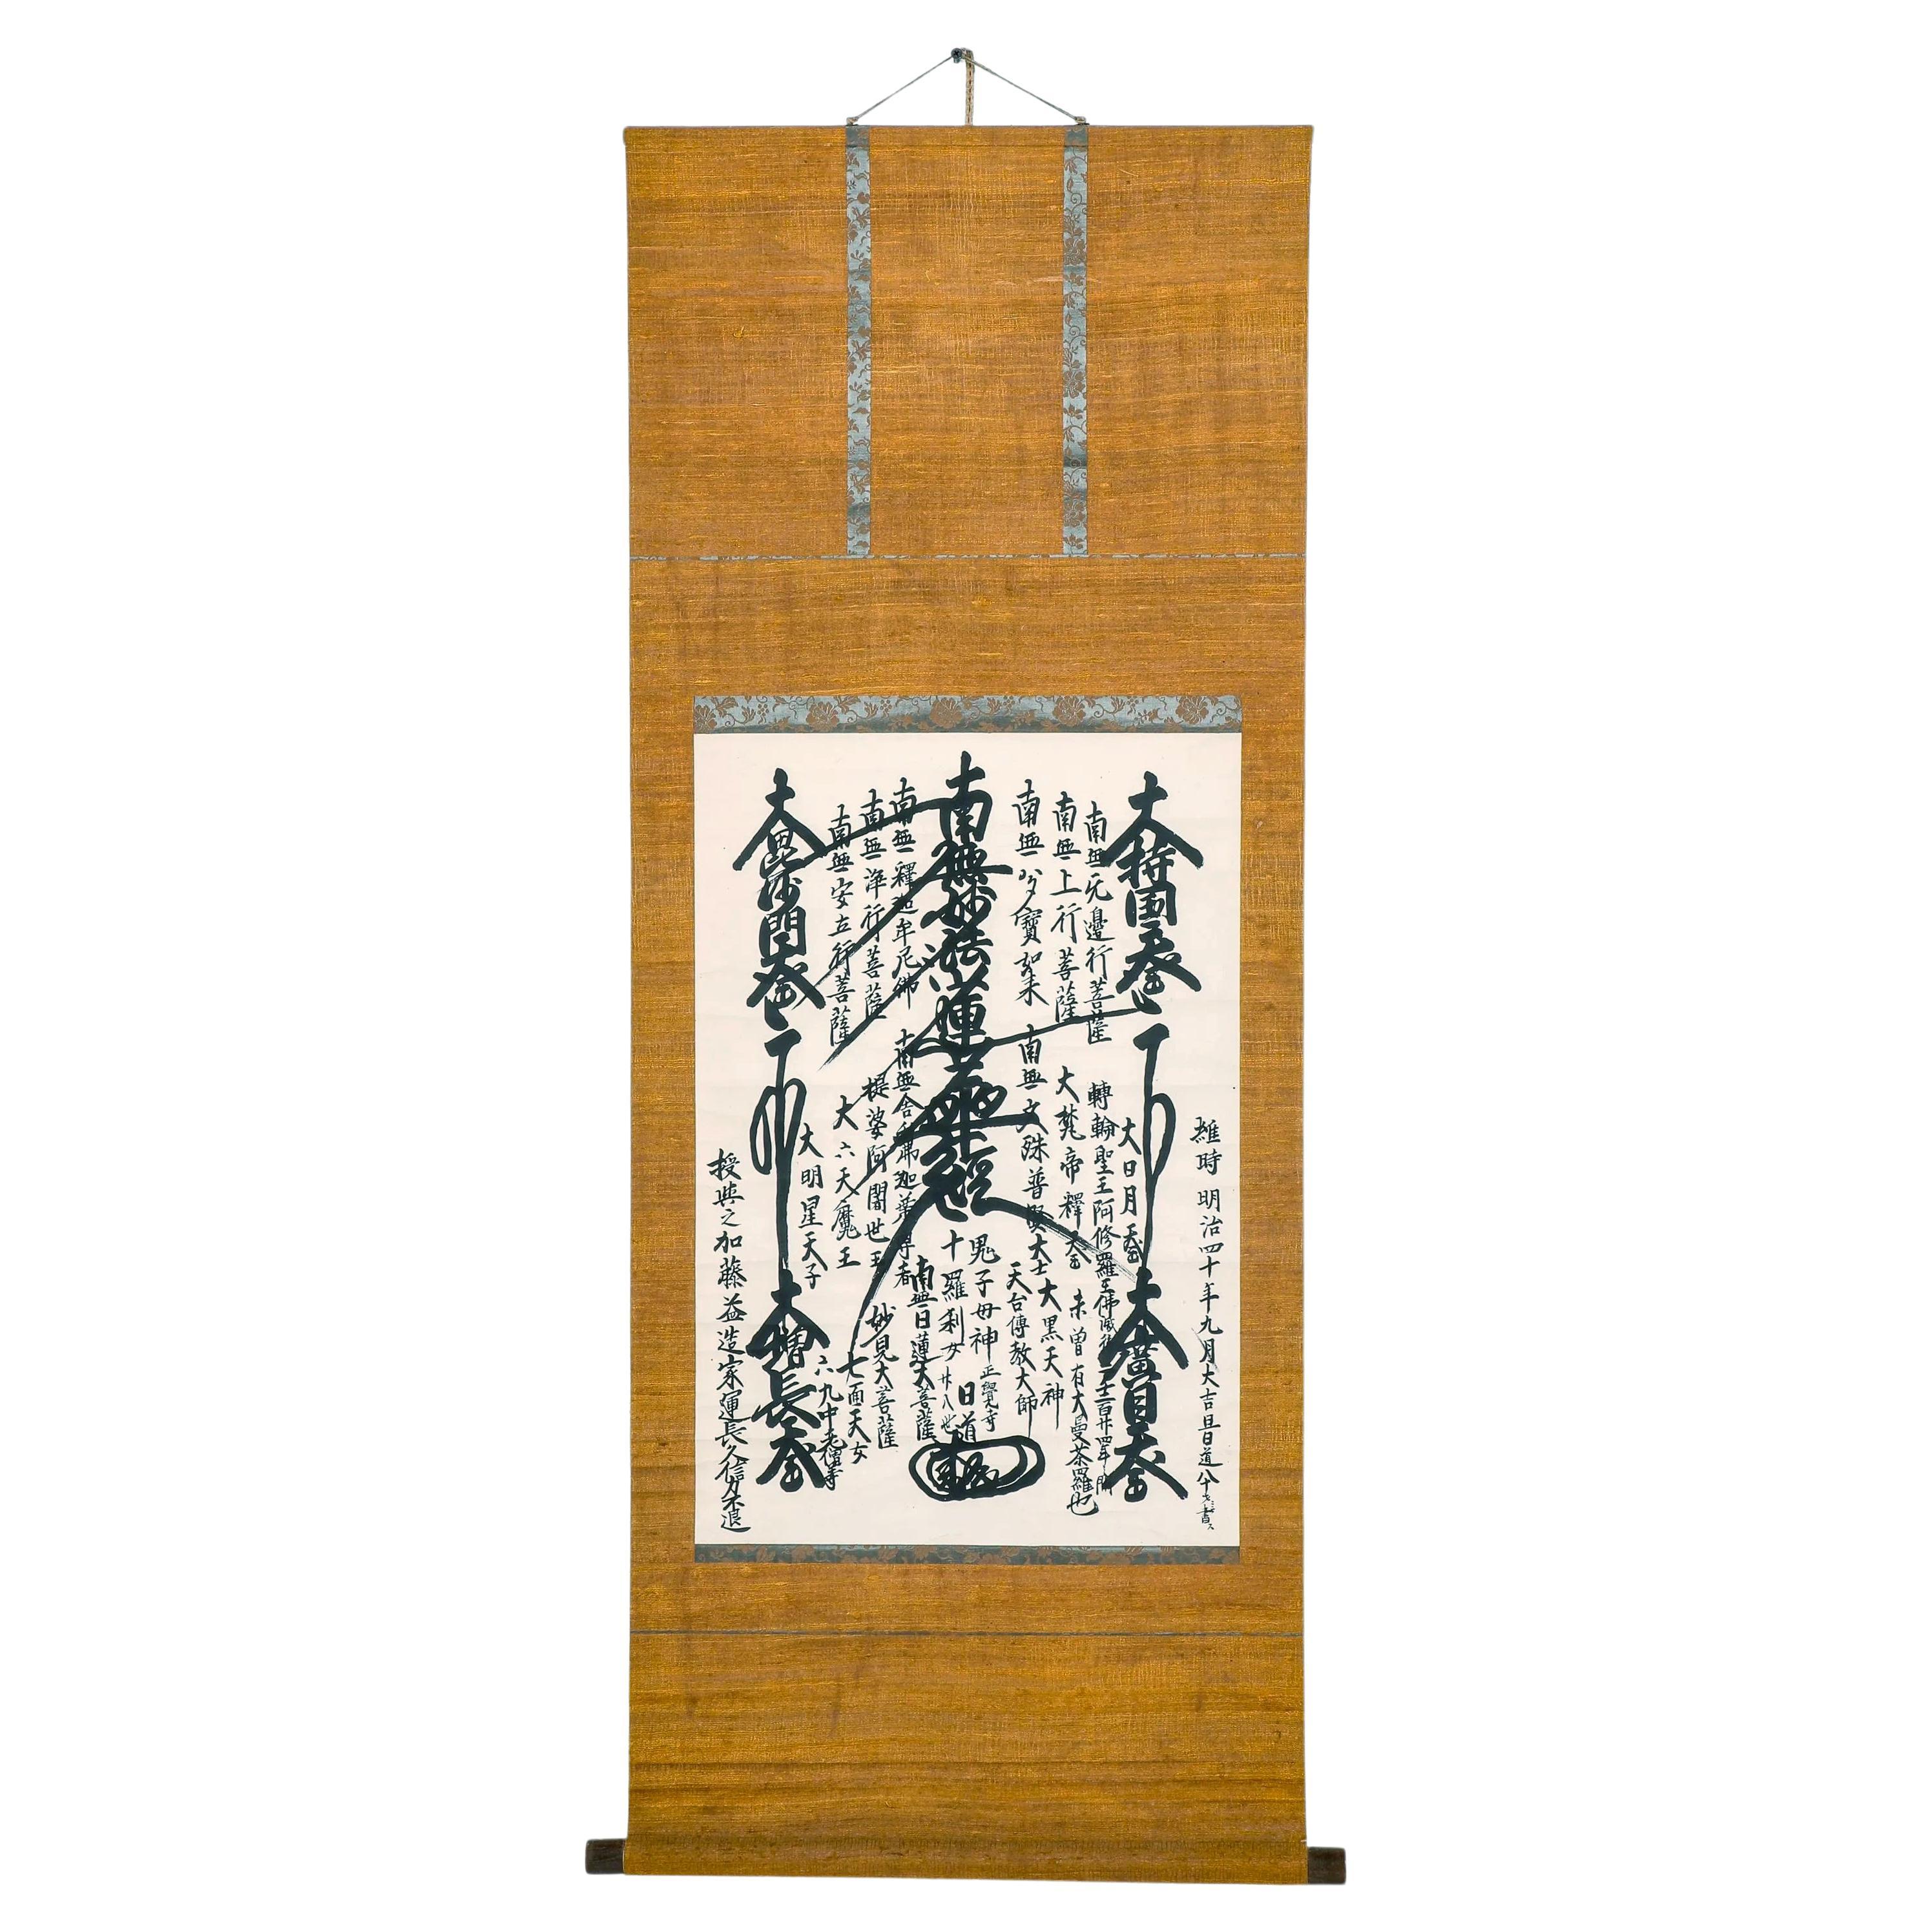 Japanische buddhistische Gohonzon- Kalligrafie Mandala-Schnörkel aus der Meiji-Periode